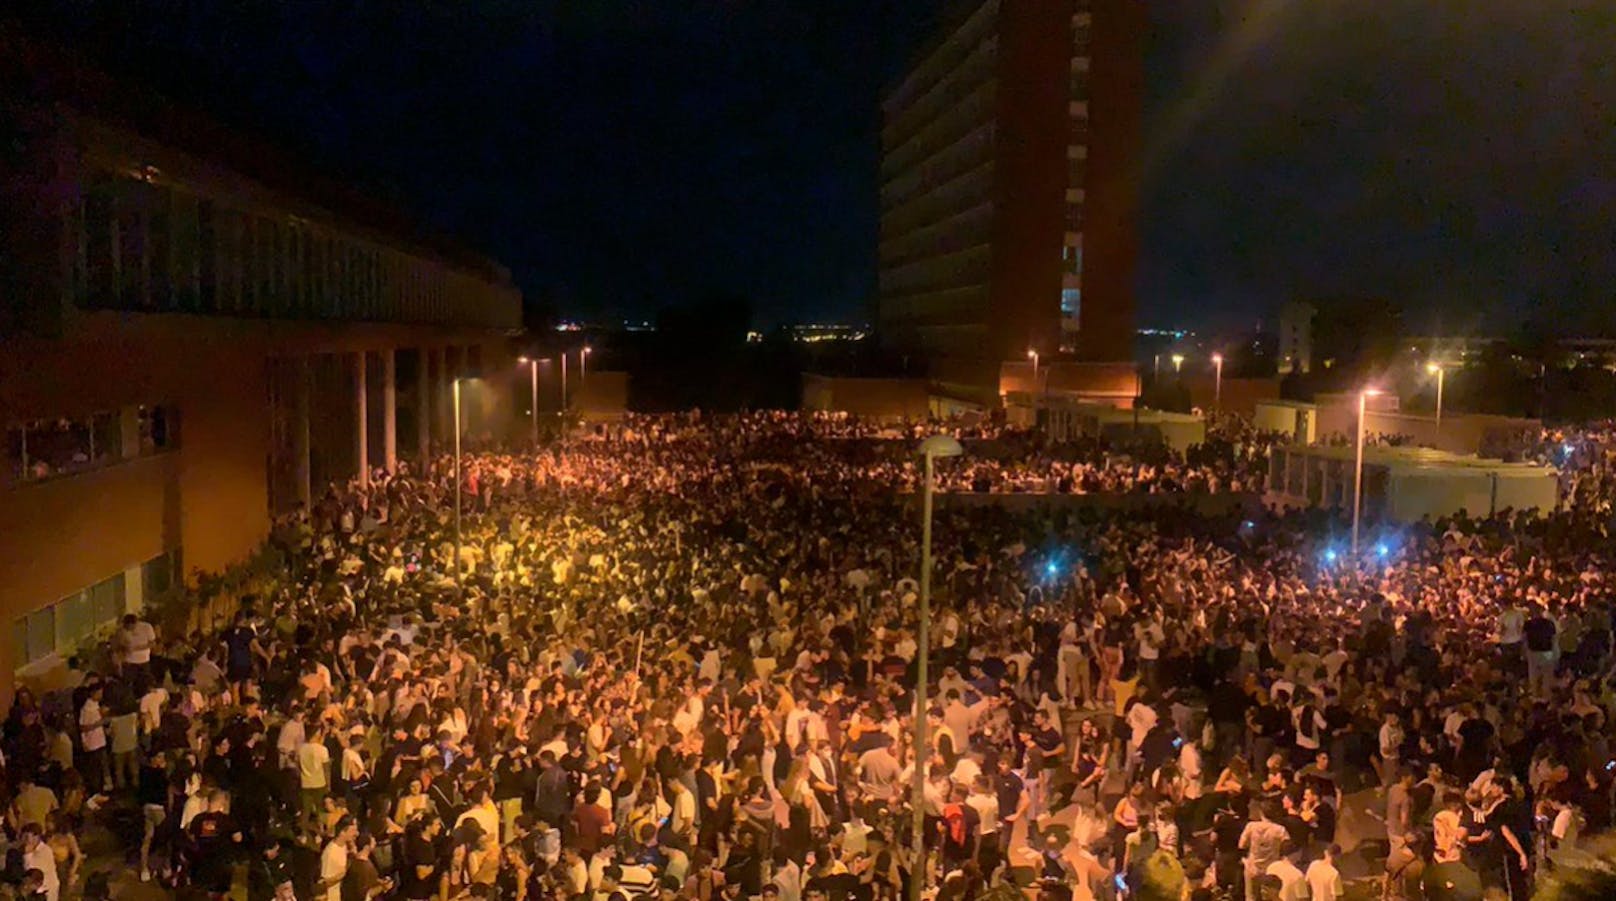 Laut der Zeitung "El País" haben in der Nacht zum 18. September 2021 rund 25.000 junge Menschen eine illegale Party in Madrid gefeiert.